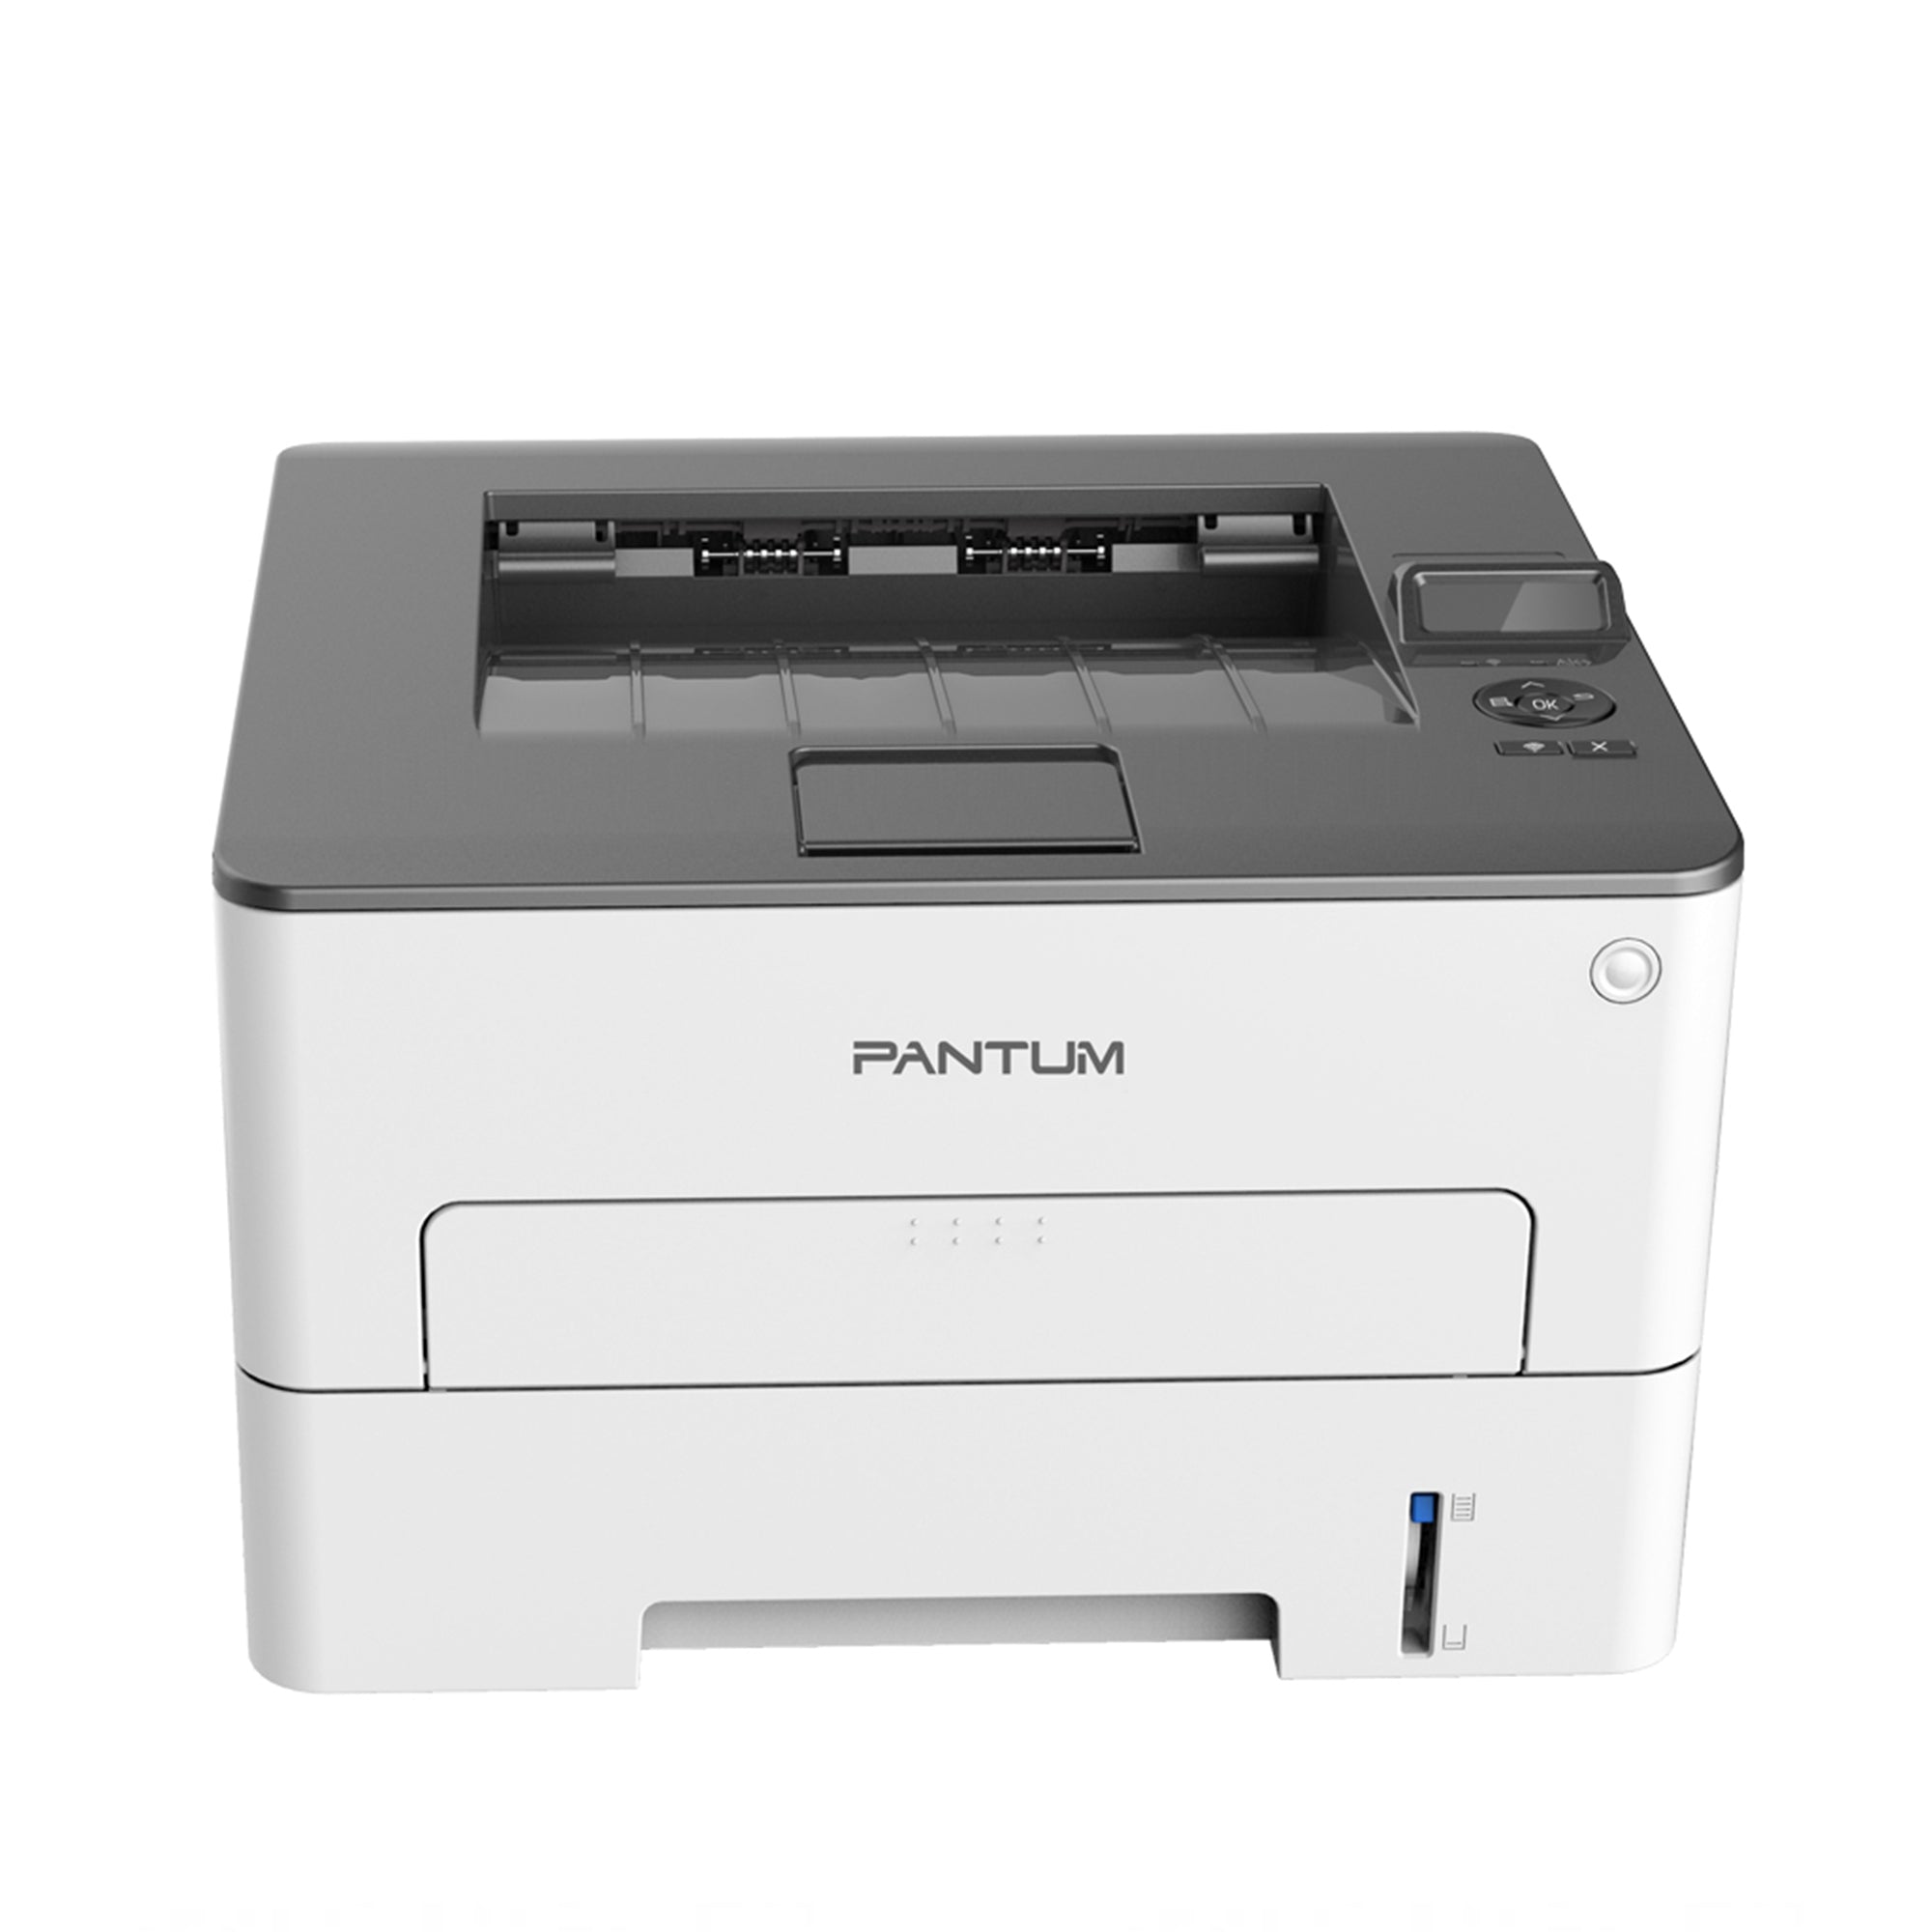 Pantum P3305DW printer